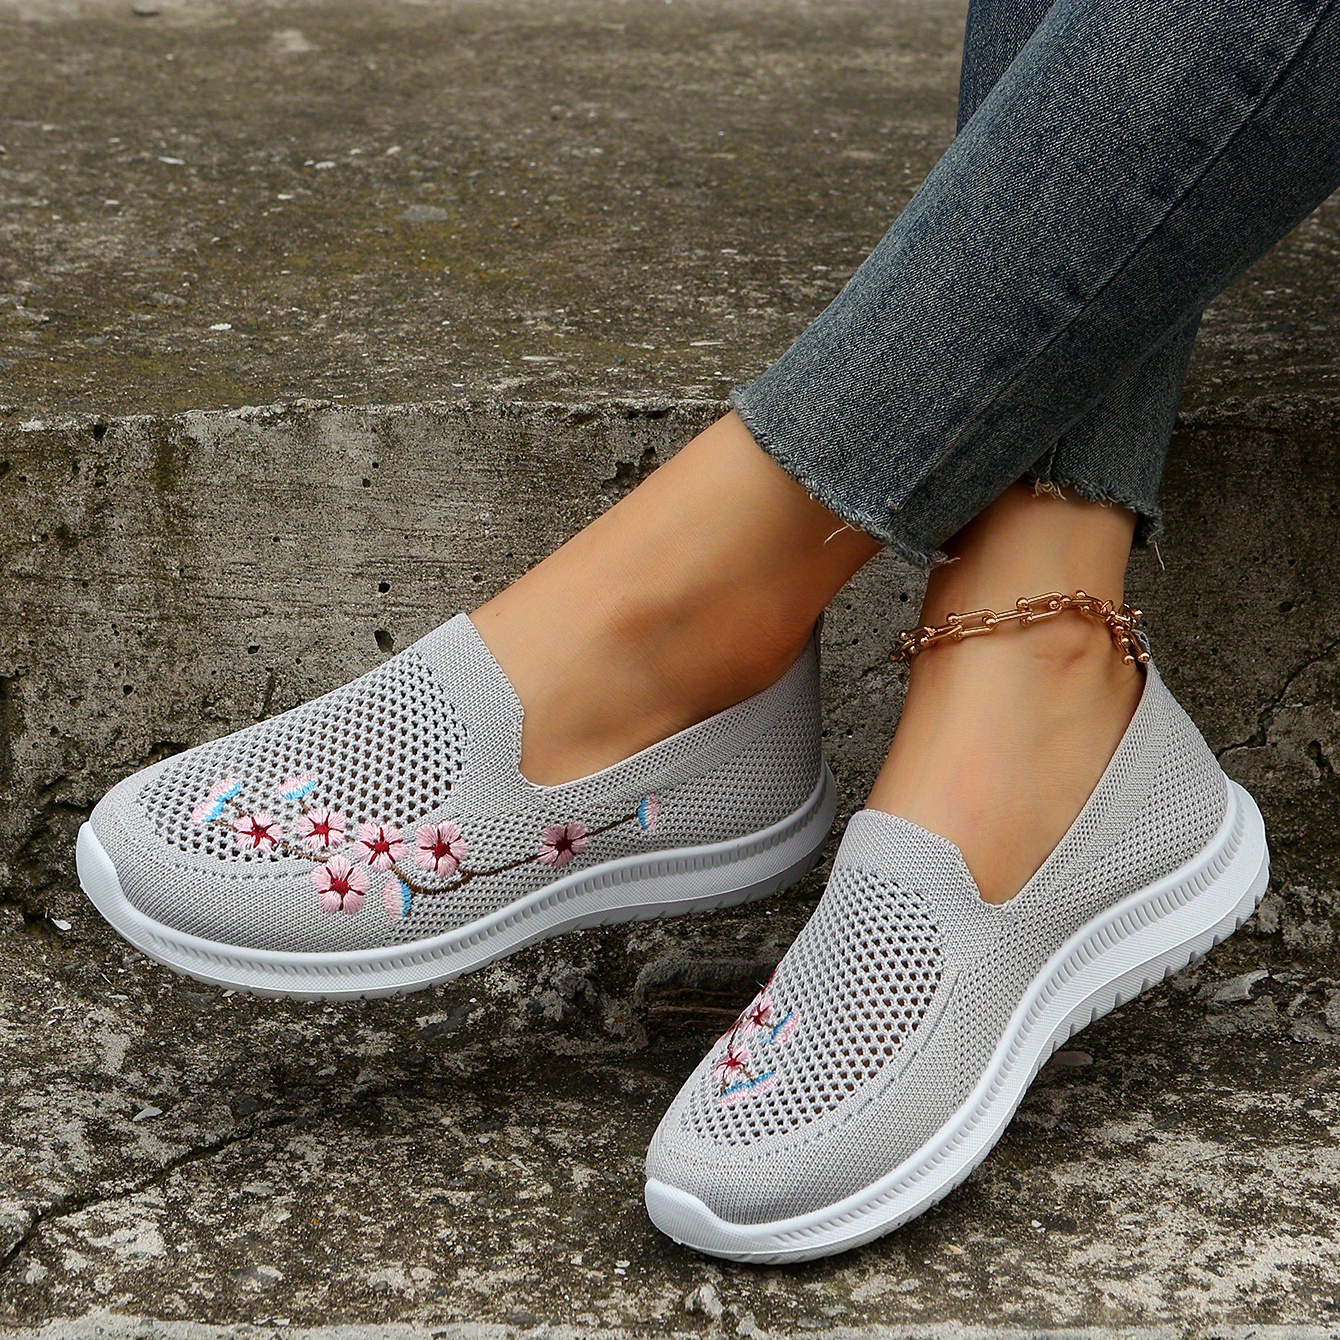 Women's Flower Pattern Sneakers Fashion Mesh Slip On Walking Shoes ...